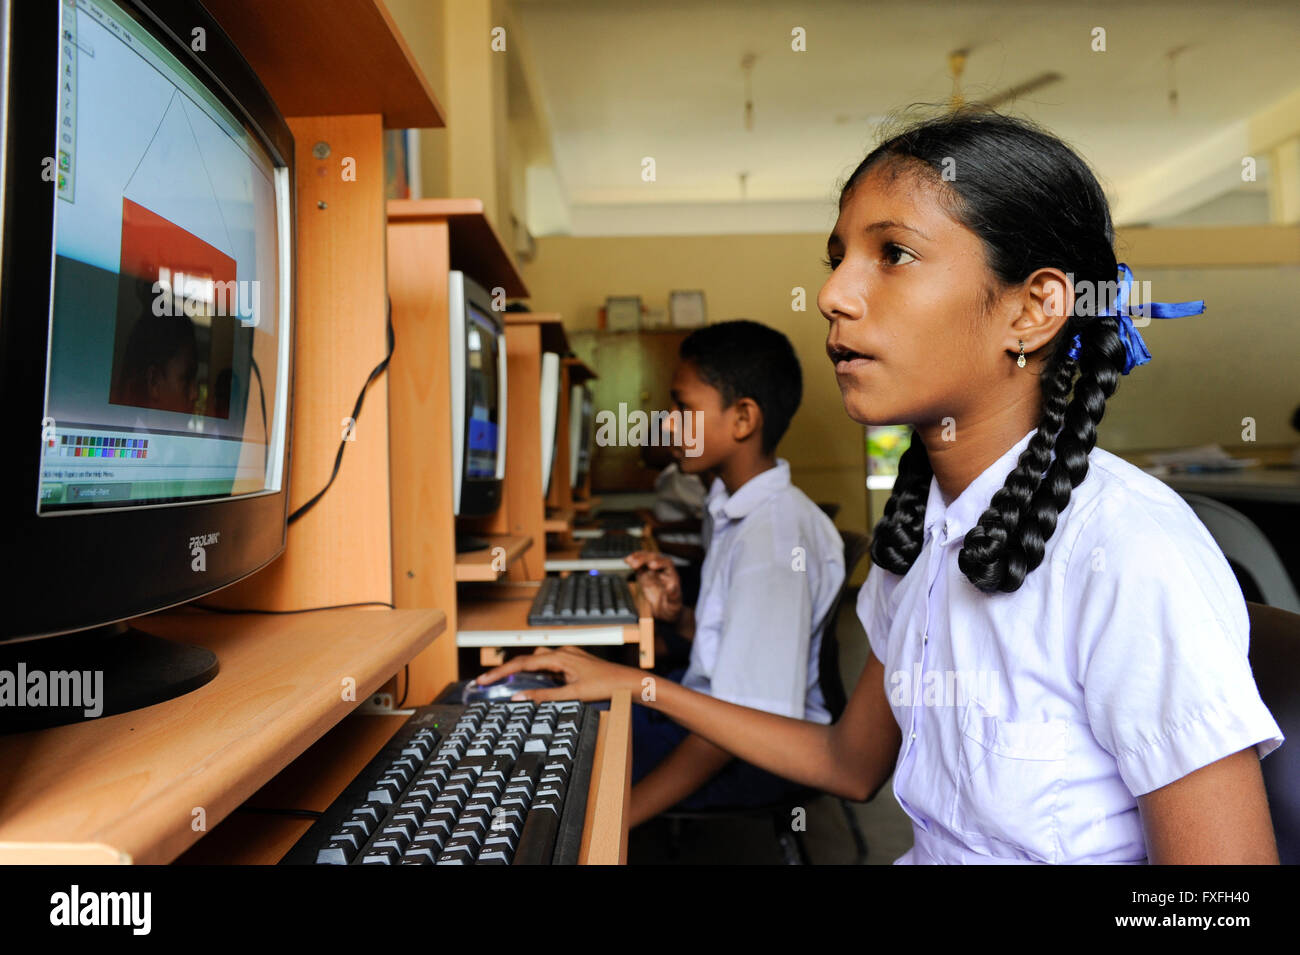 Sri Lanka Colombo, Samata Sarana, projet par l'église catholique pour l'éducation numérique des enfants des bidonvilles / Hilfsprojekt kirchliches Samata Sarana, digitale Bildung fuer Kinder aus Bidonvilles Banque D'Images